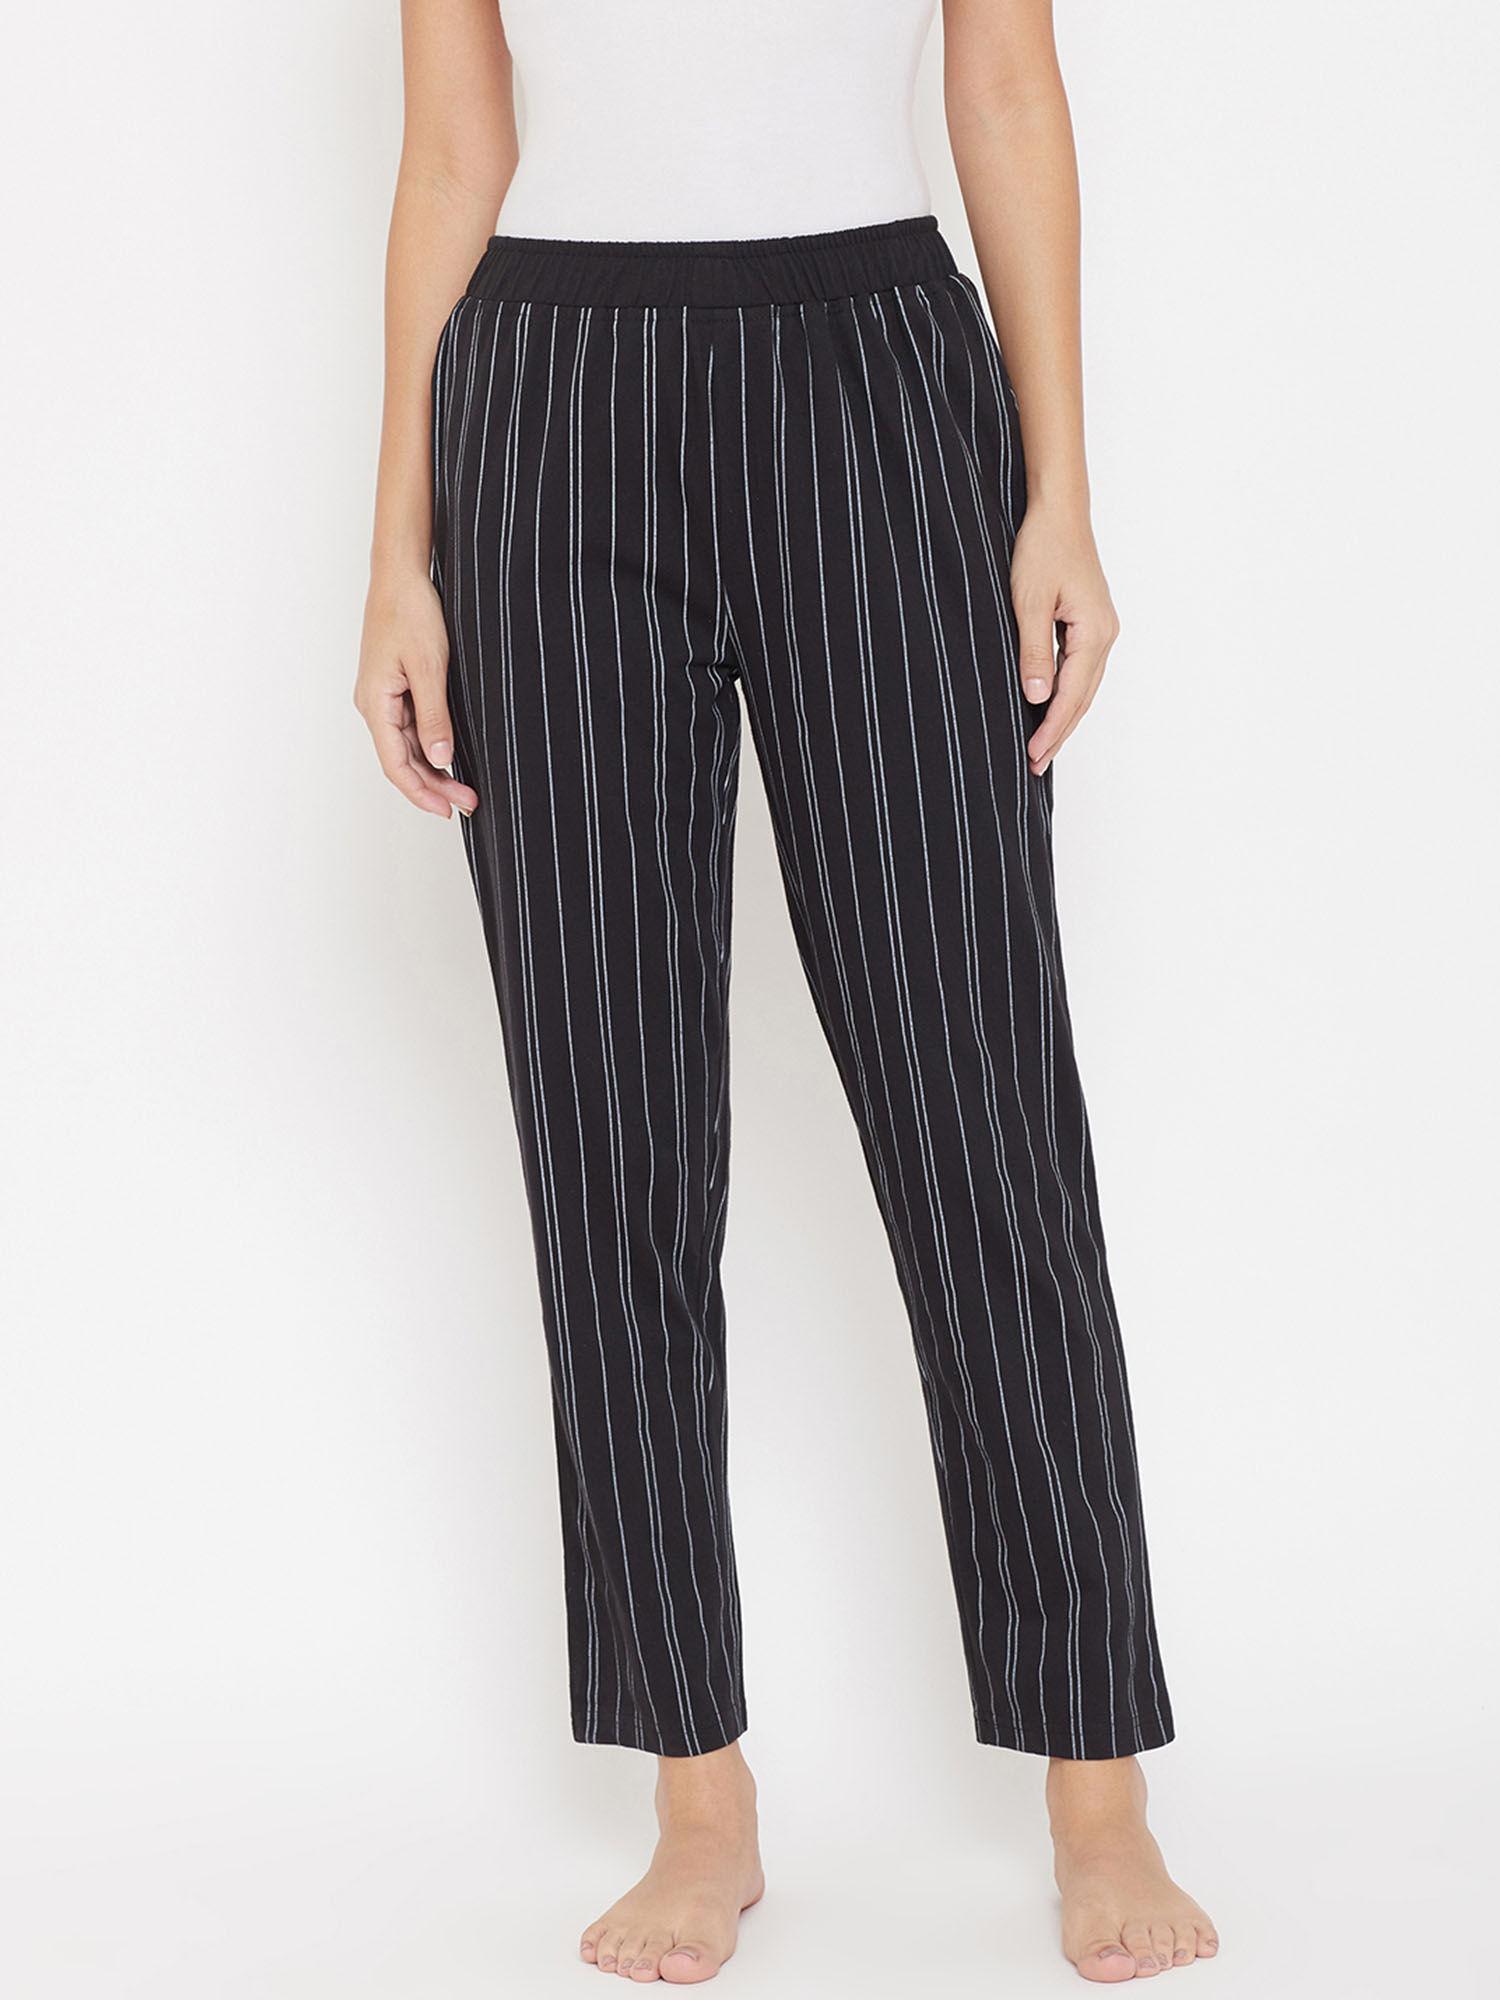 women black & white striped lounge pants